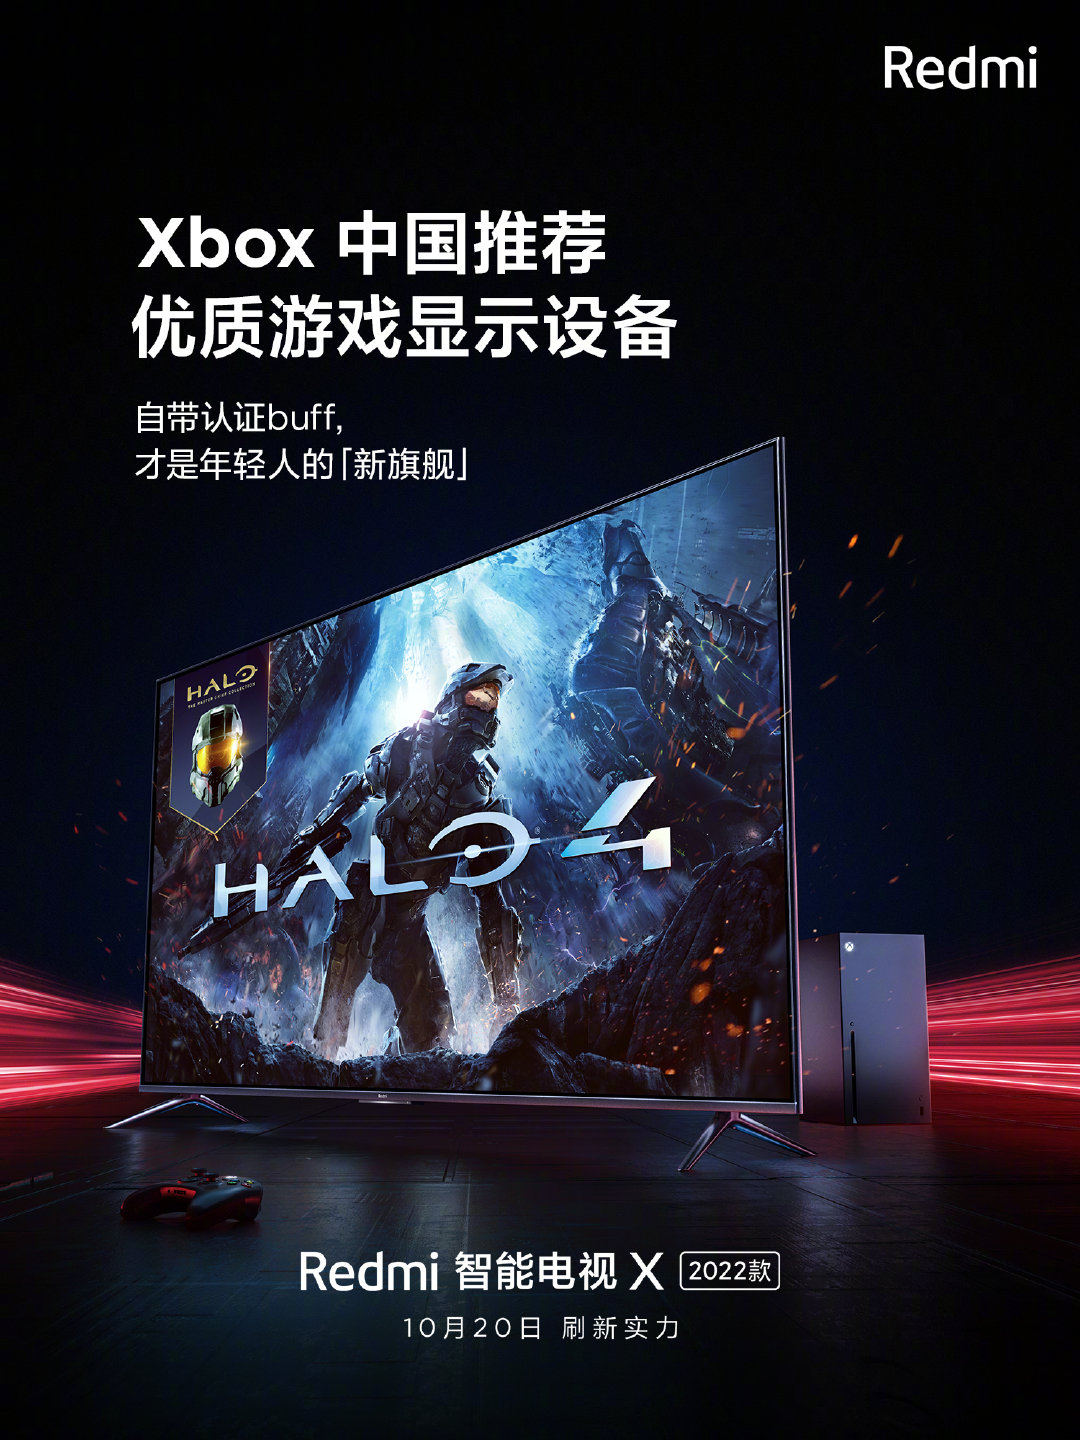 2022款Redmi智能电视X获Xbox中国显示设备认证